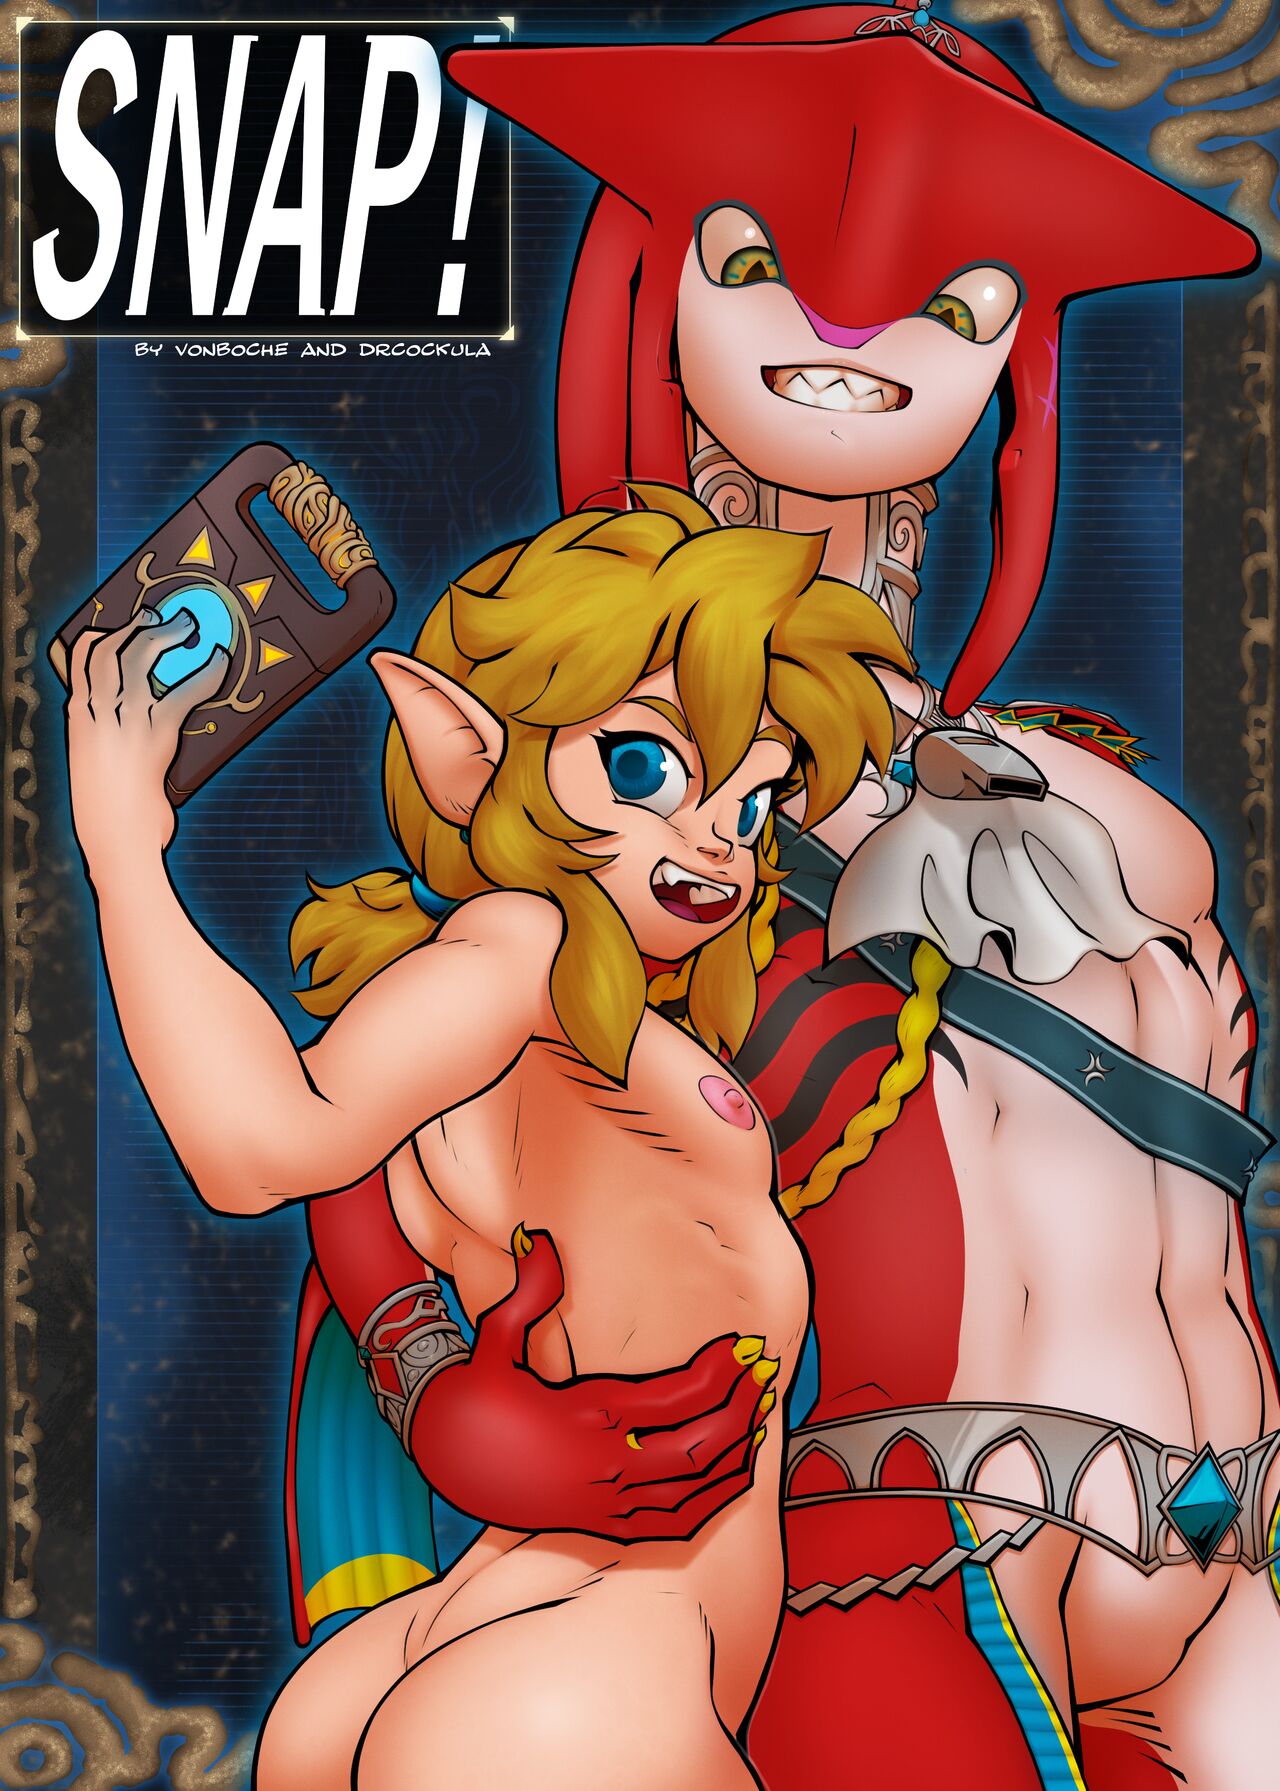 VonBoche] Snap! (The Legend of Zelda) - Porn Comics Galleries